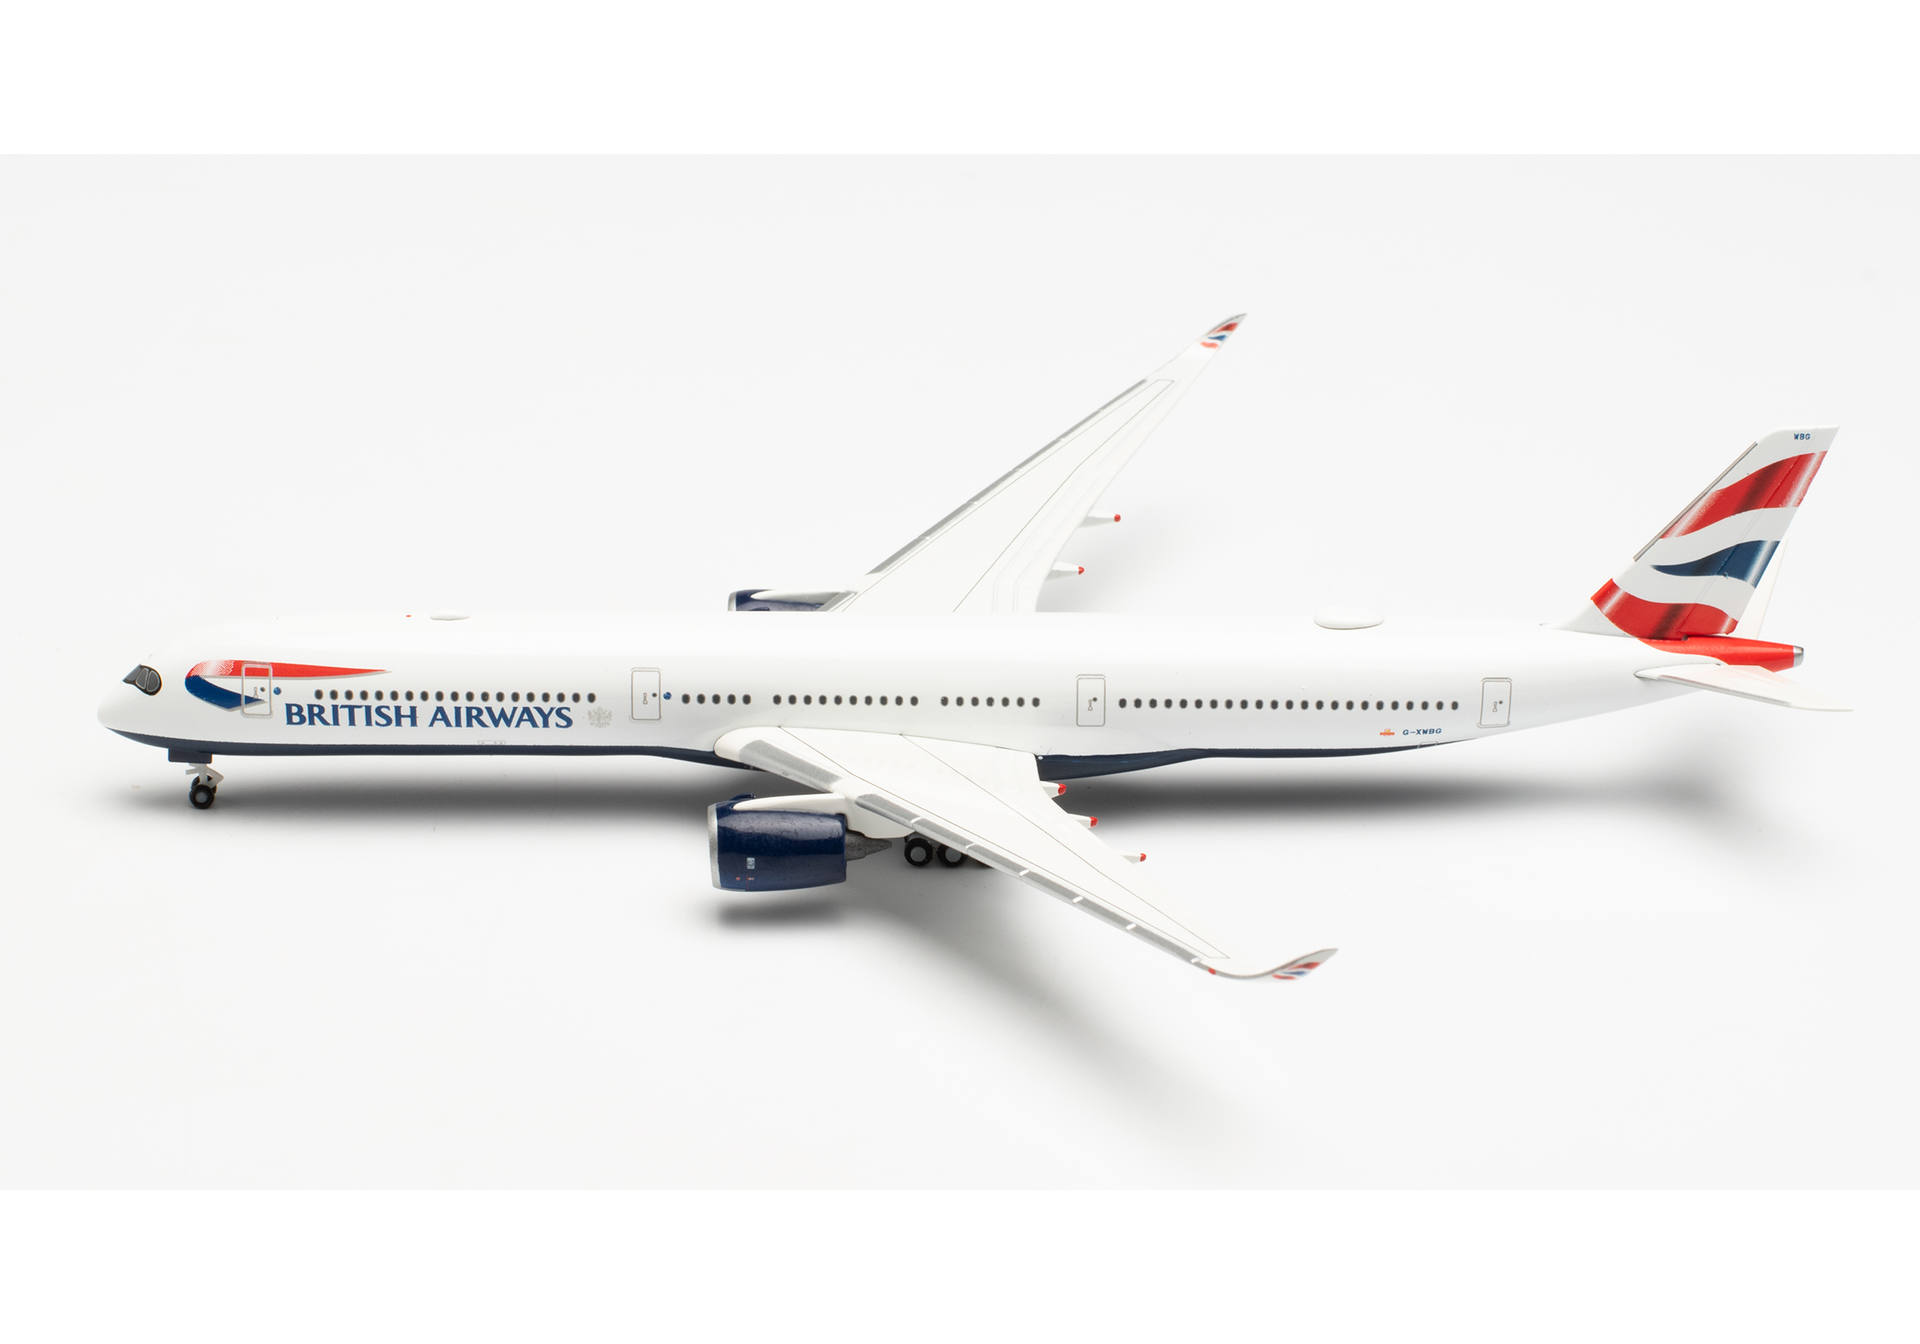   Airbus A350-1000 British Airways - G-XWBG, 1:500, 533126-002.  # 1 hobbyplus.ru